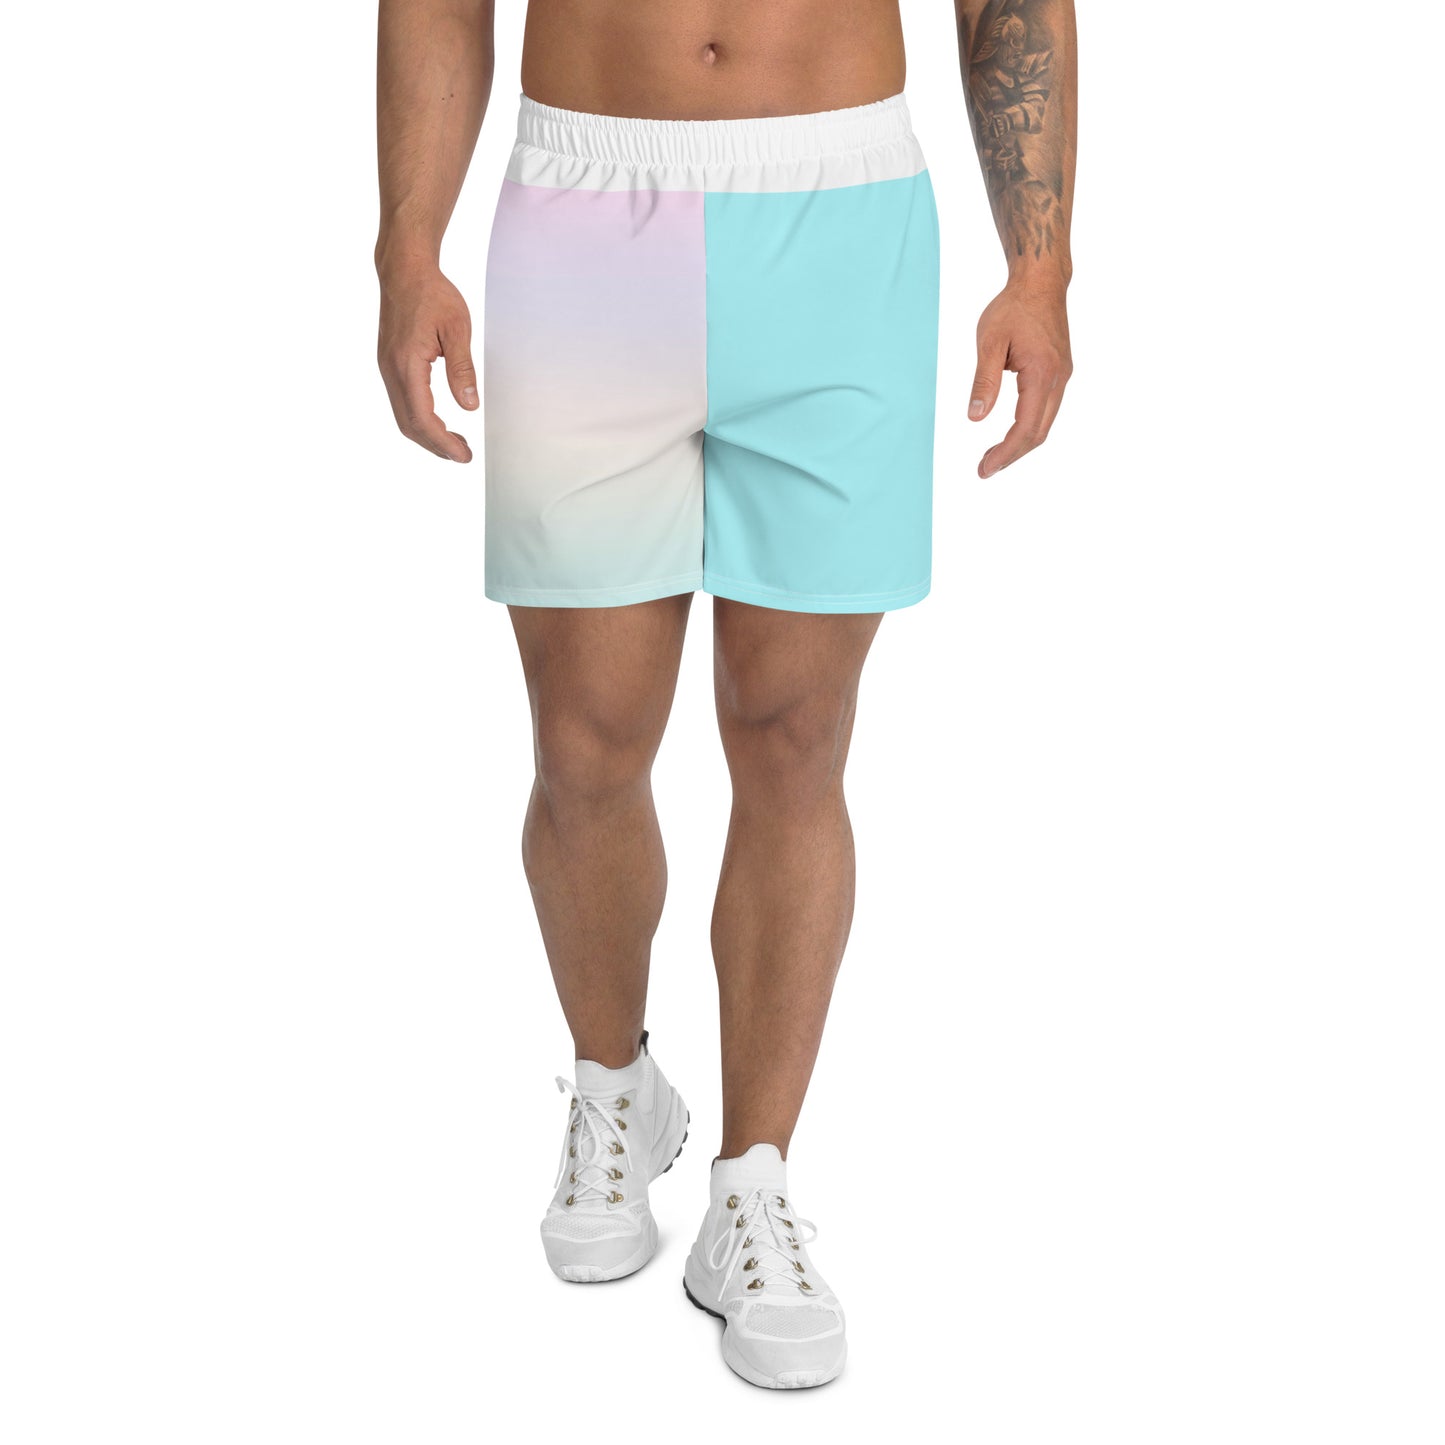 Shorts esportivos reciclados de tamanho masculino Trans Pride Pastel Rainbow 2XS - 6XL